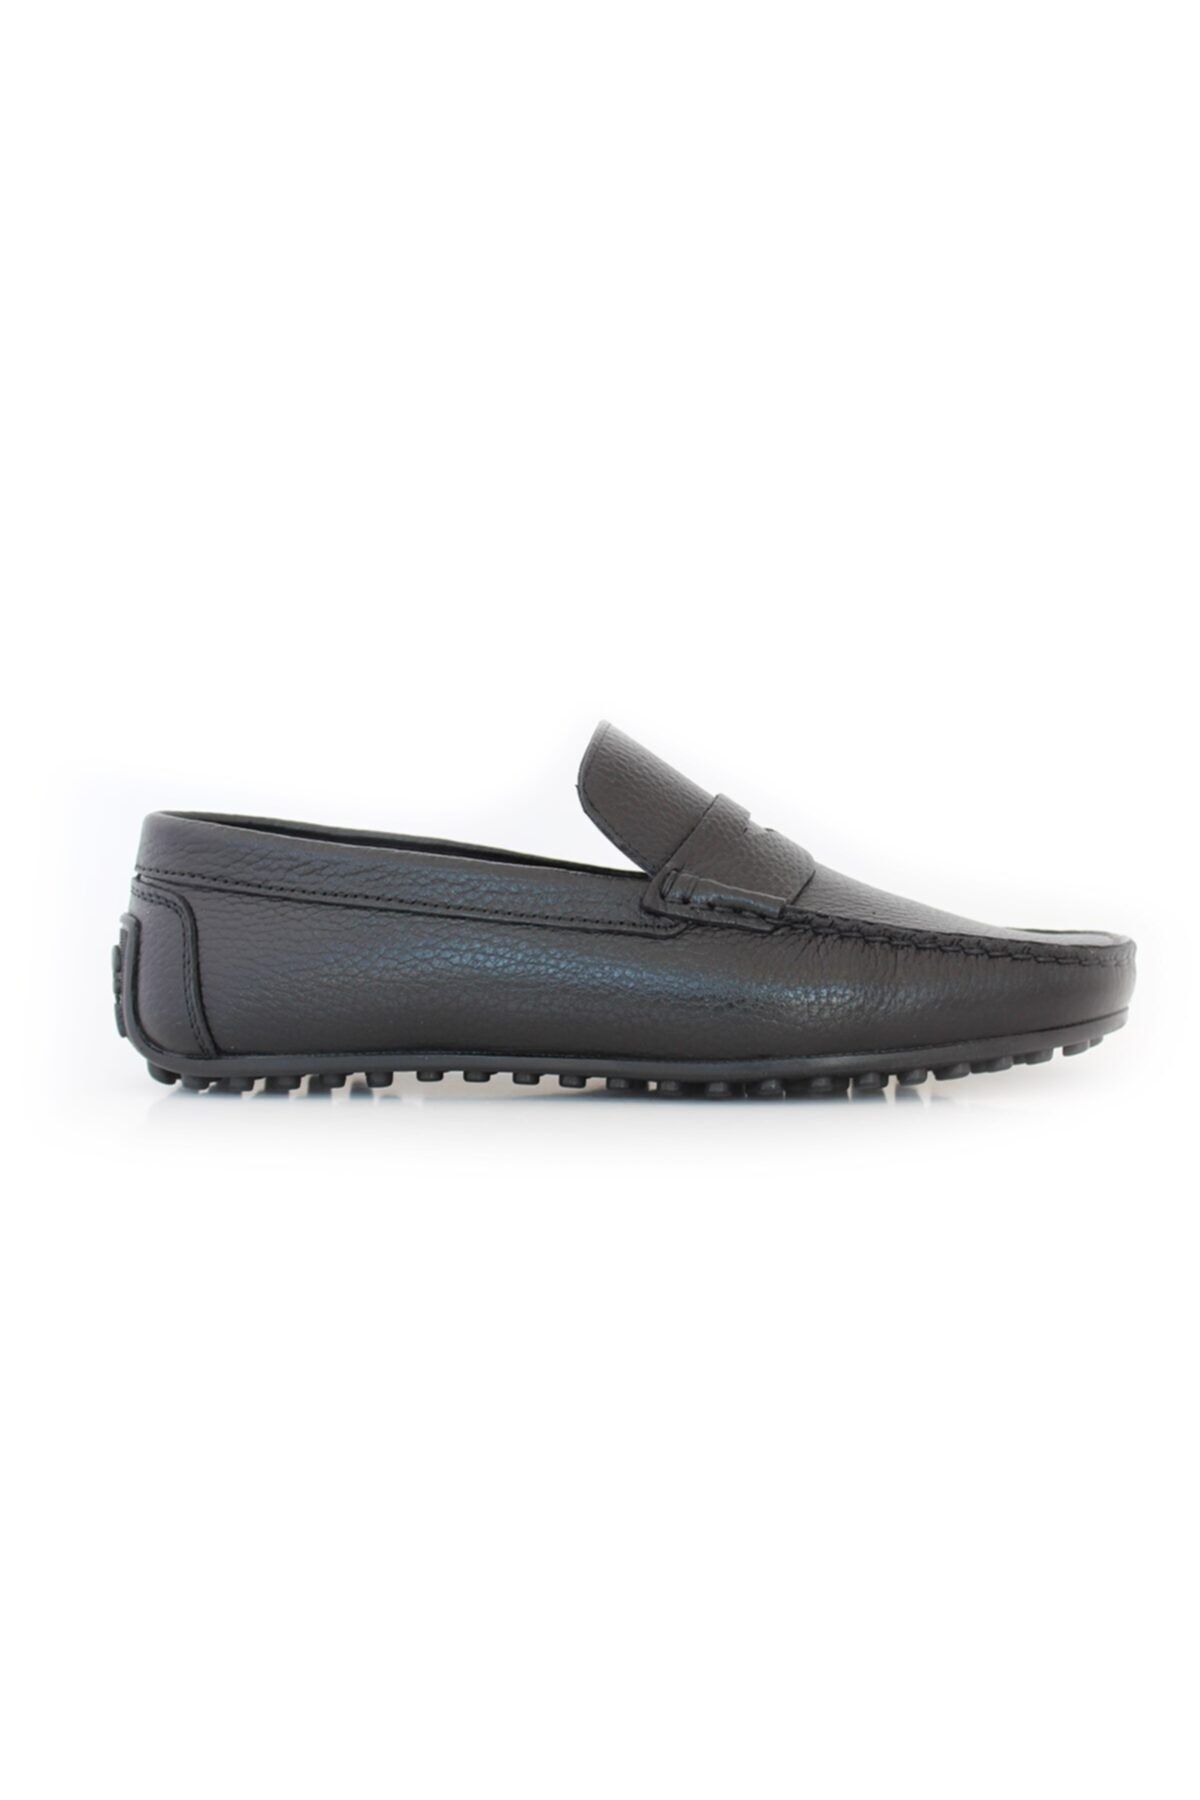 TKN 3m 00112 Rok Kolej Hakiki Deri Yazlık Erkek Siyah Ayakkabısı